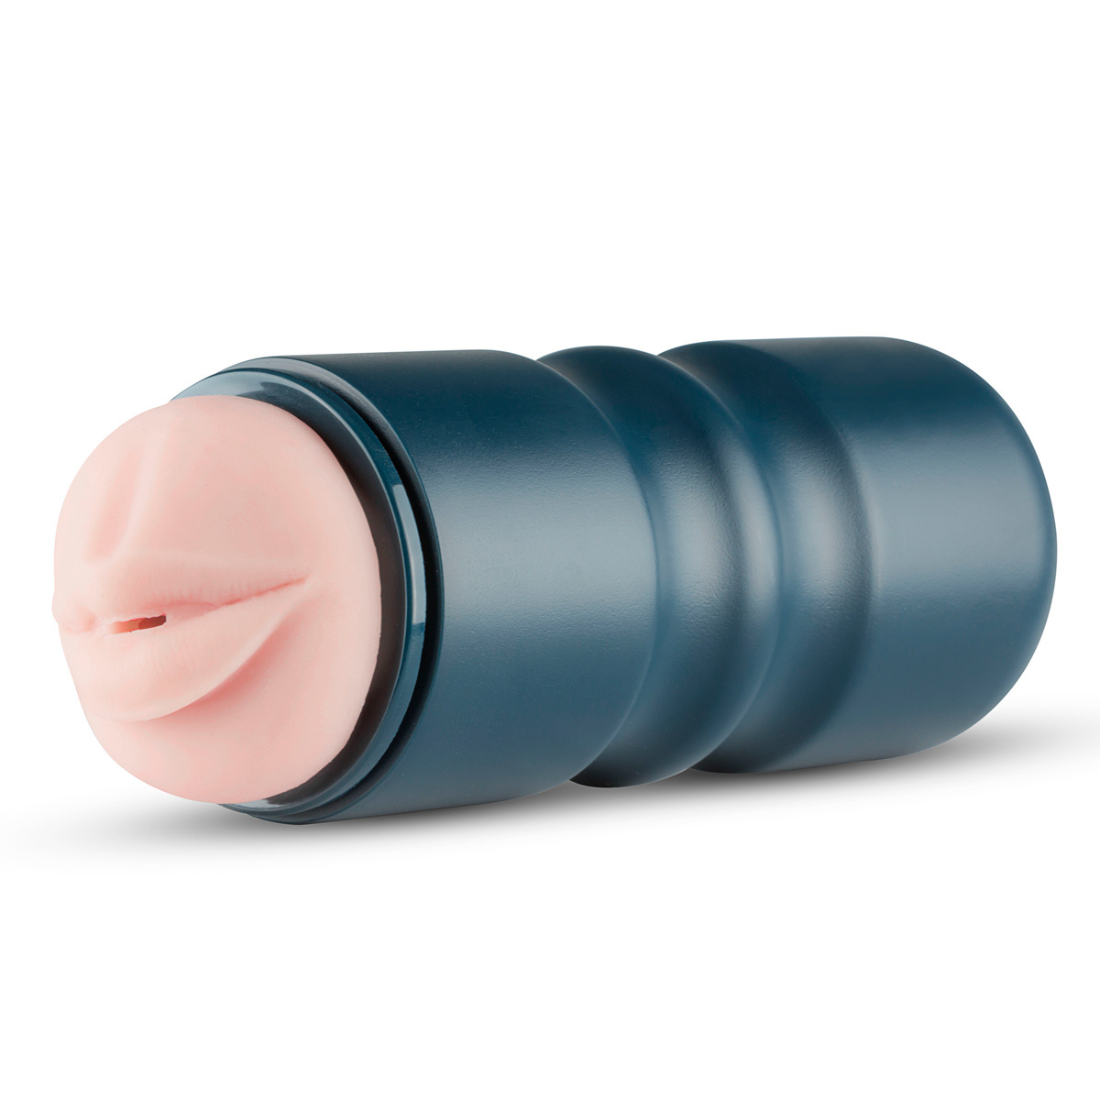 Roze mond masturbator van FPPR. Perfect voor gay mannen en te koop bij Flavourez.